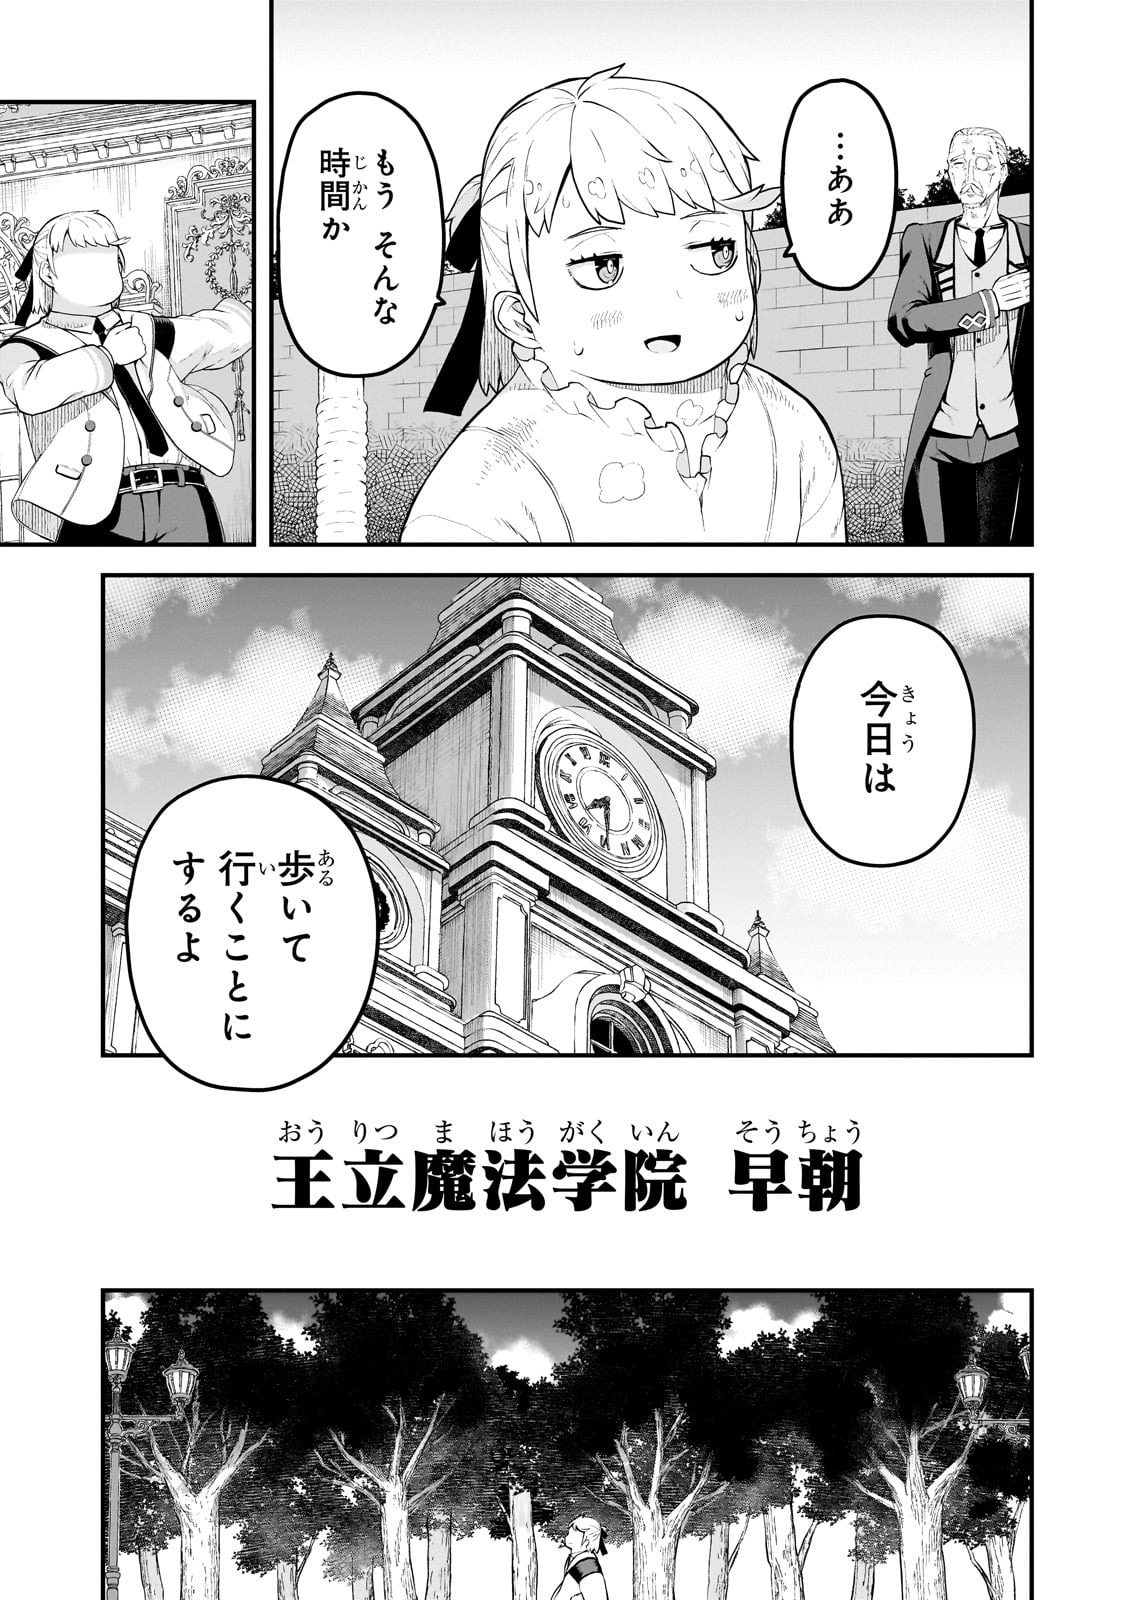 Buta Kizoku wa Mirai wo Kiri Hiraku you desu - Chapter 4 - Page 3